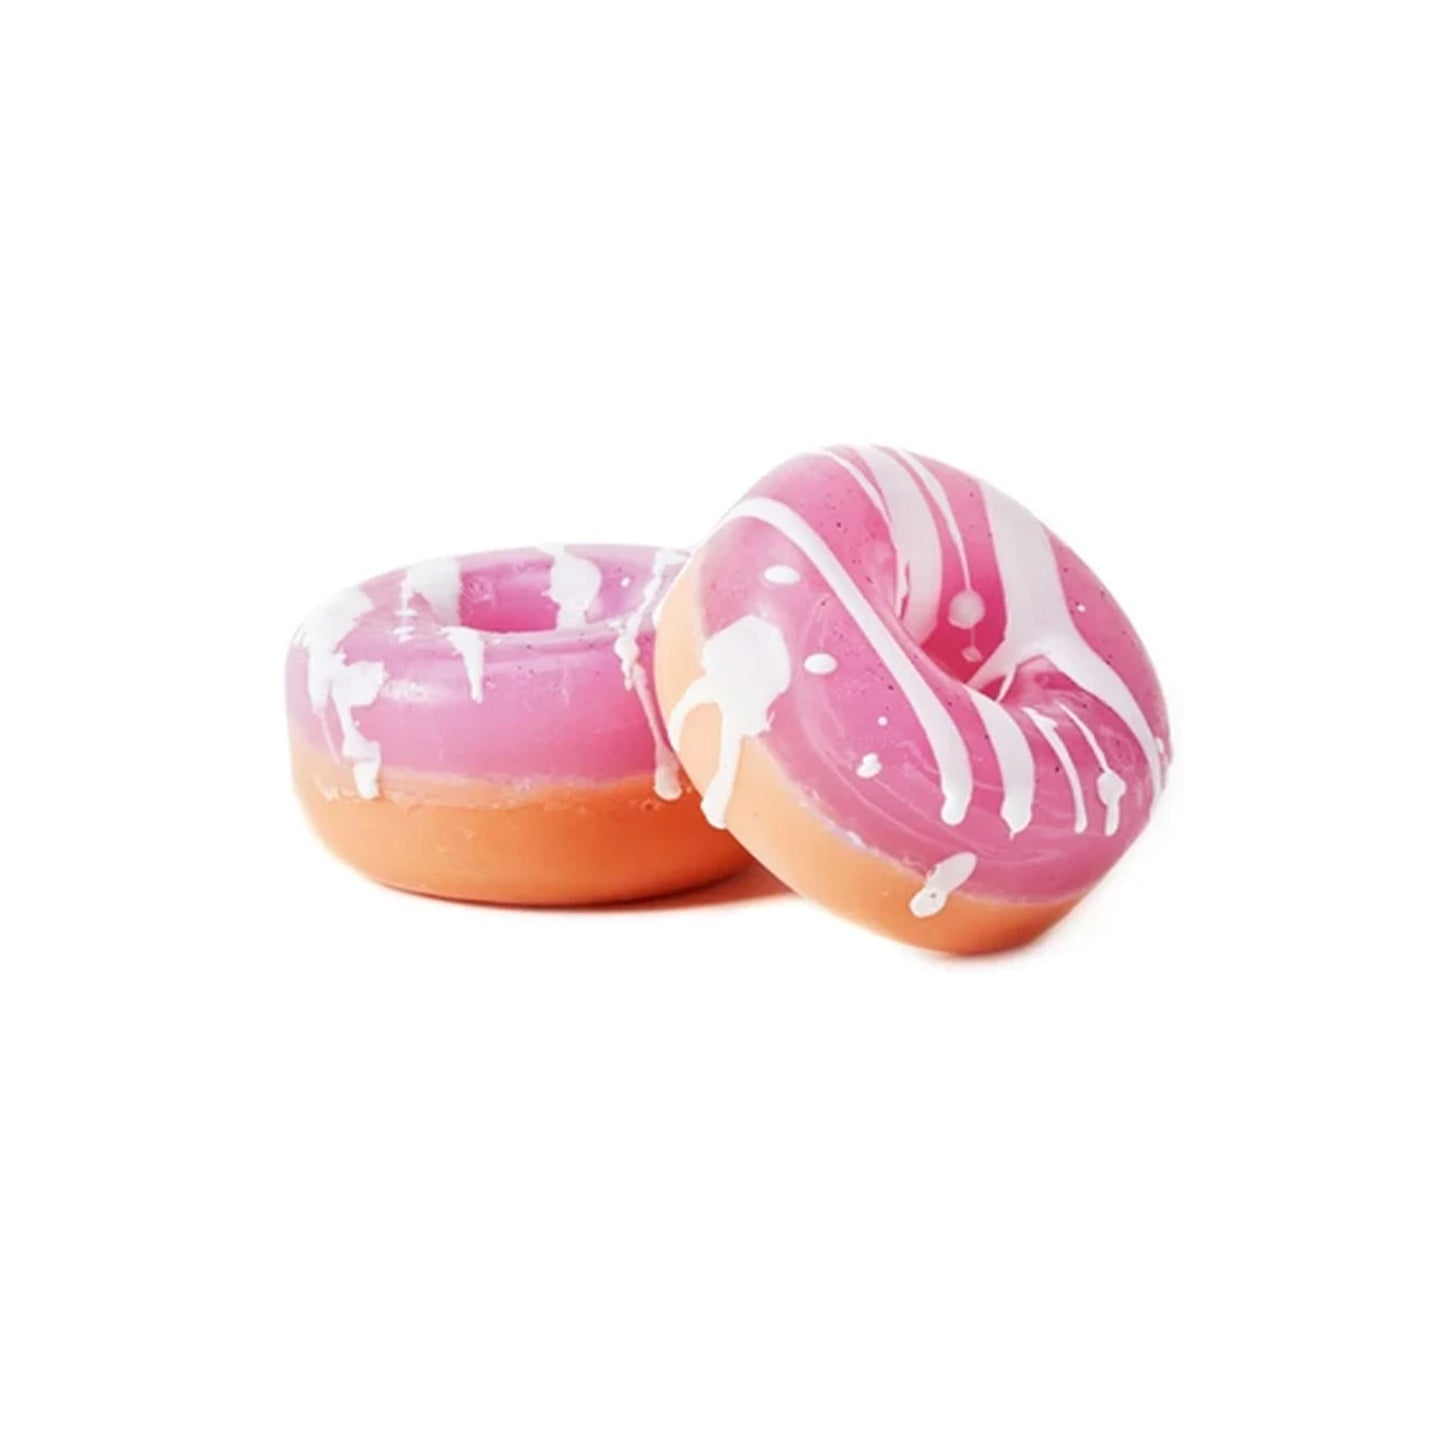 Donut Soap - Very Peachy